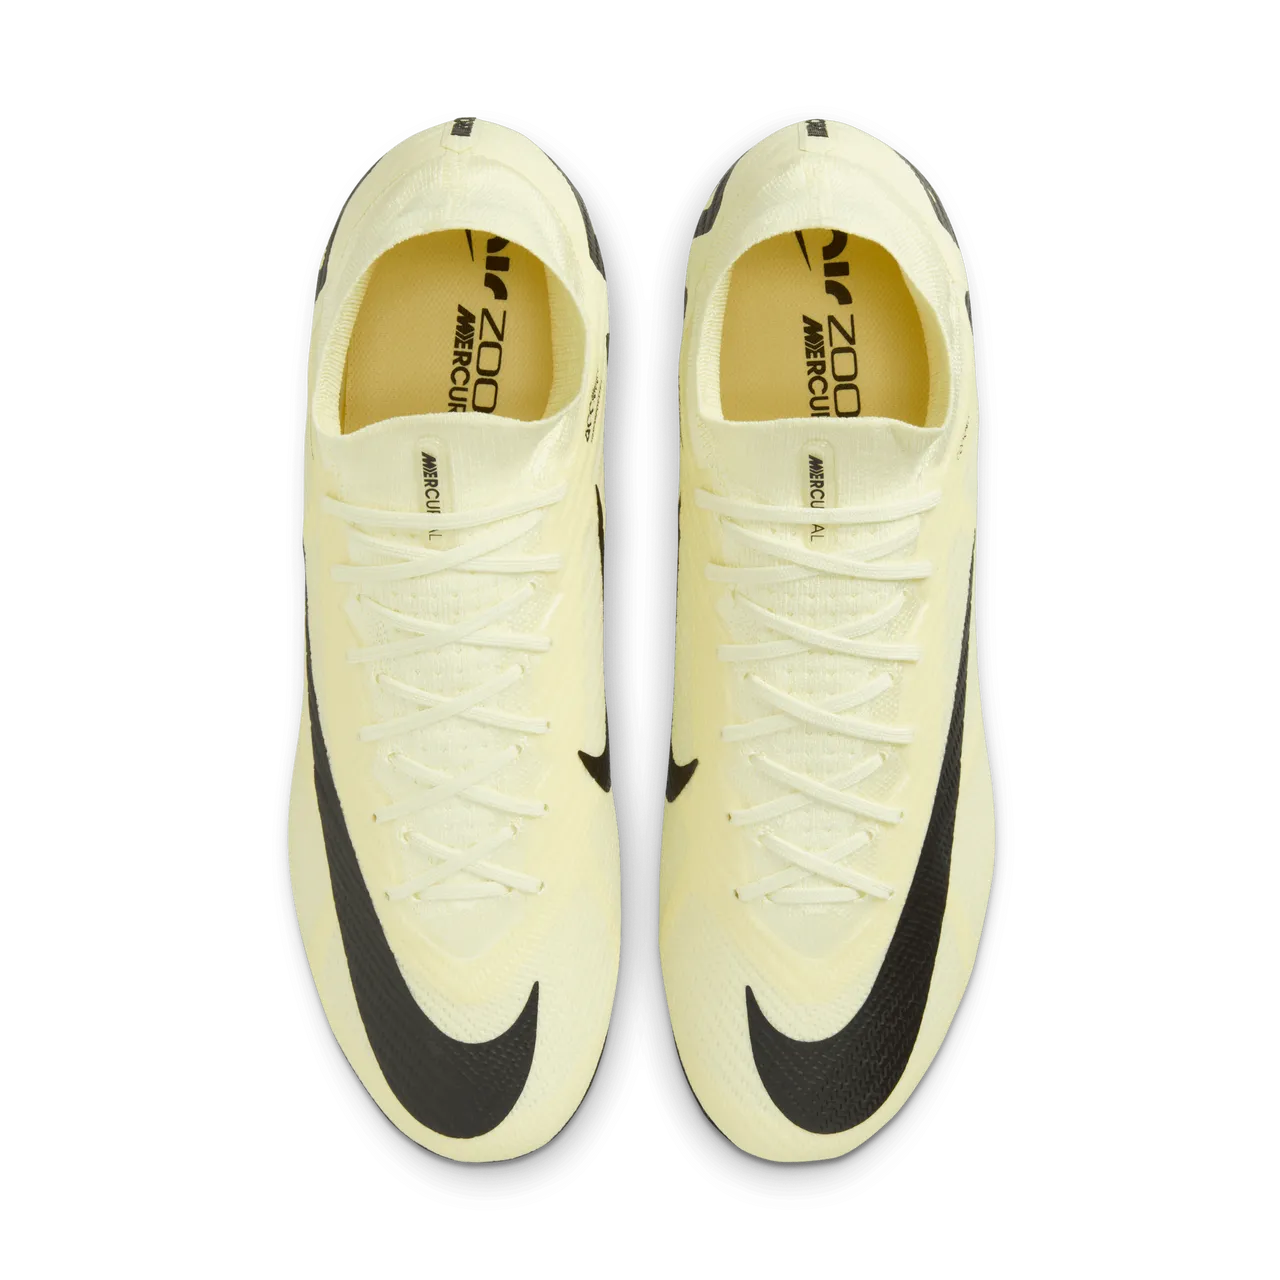 Nike Mercurial Superfly 9 Elite high top voetbalschoenen (zachte ondergrond) - Geel